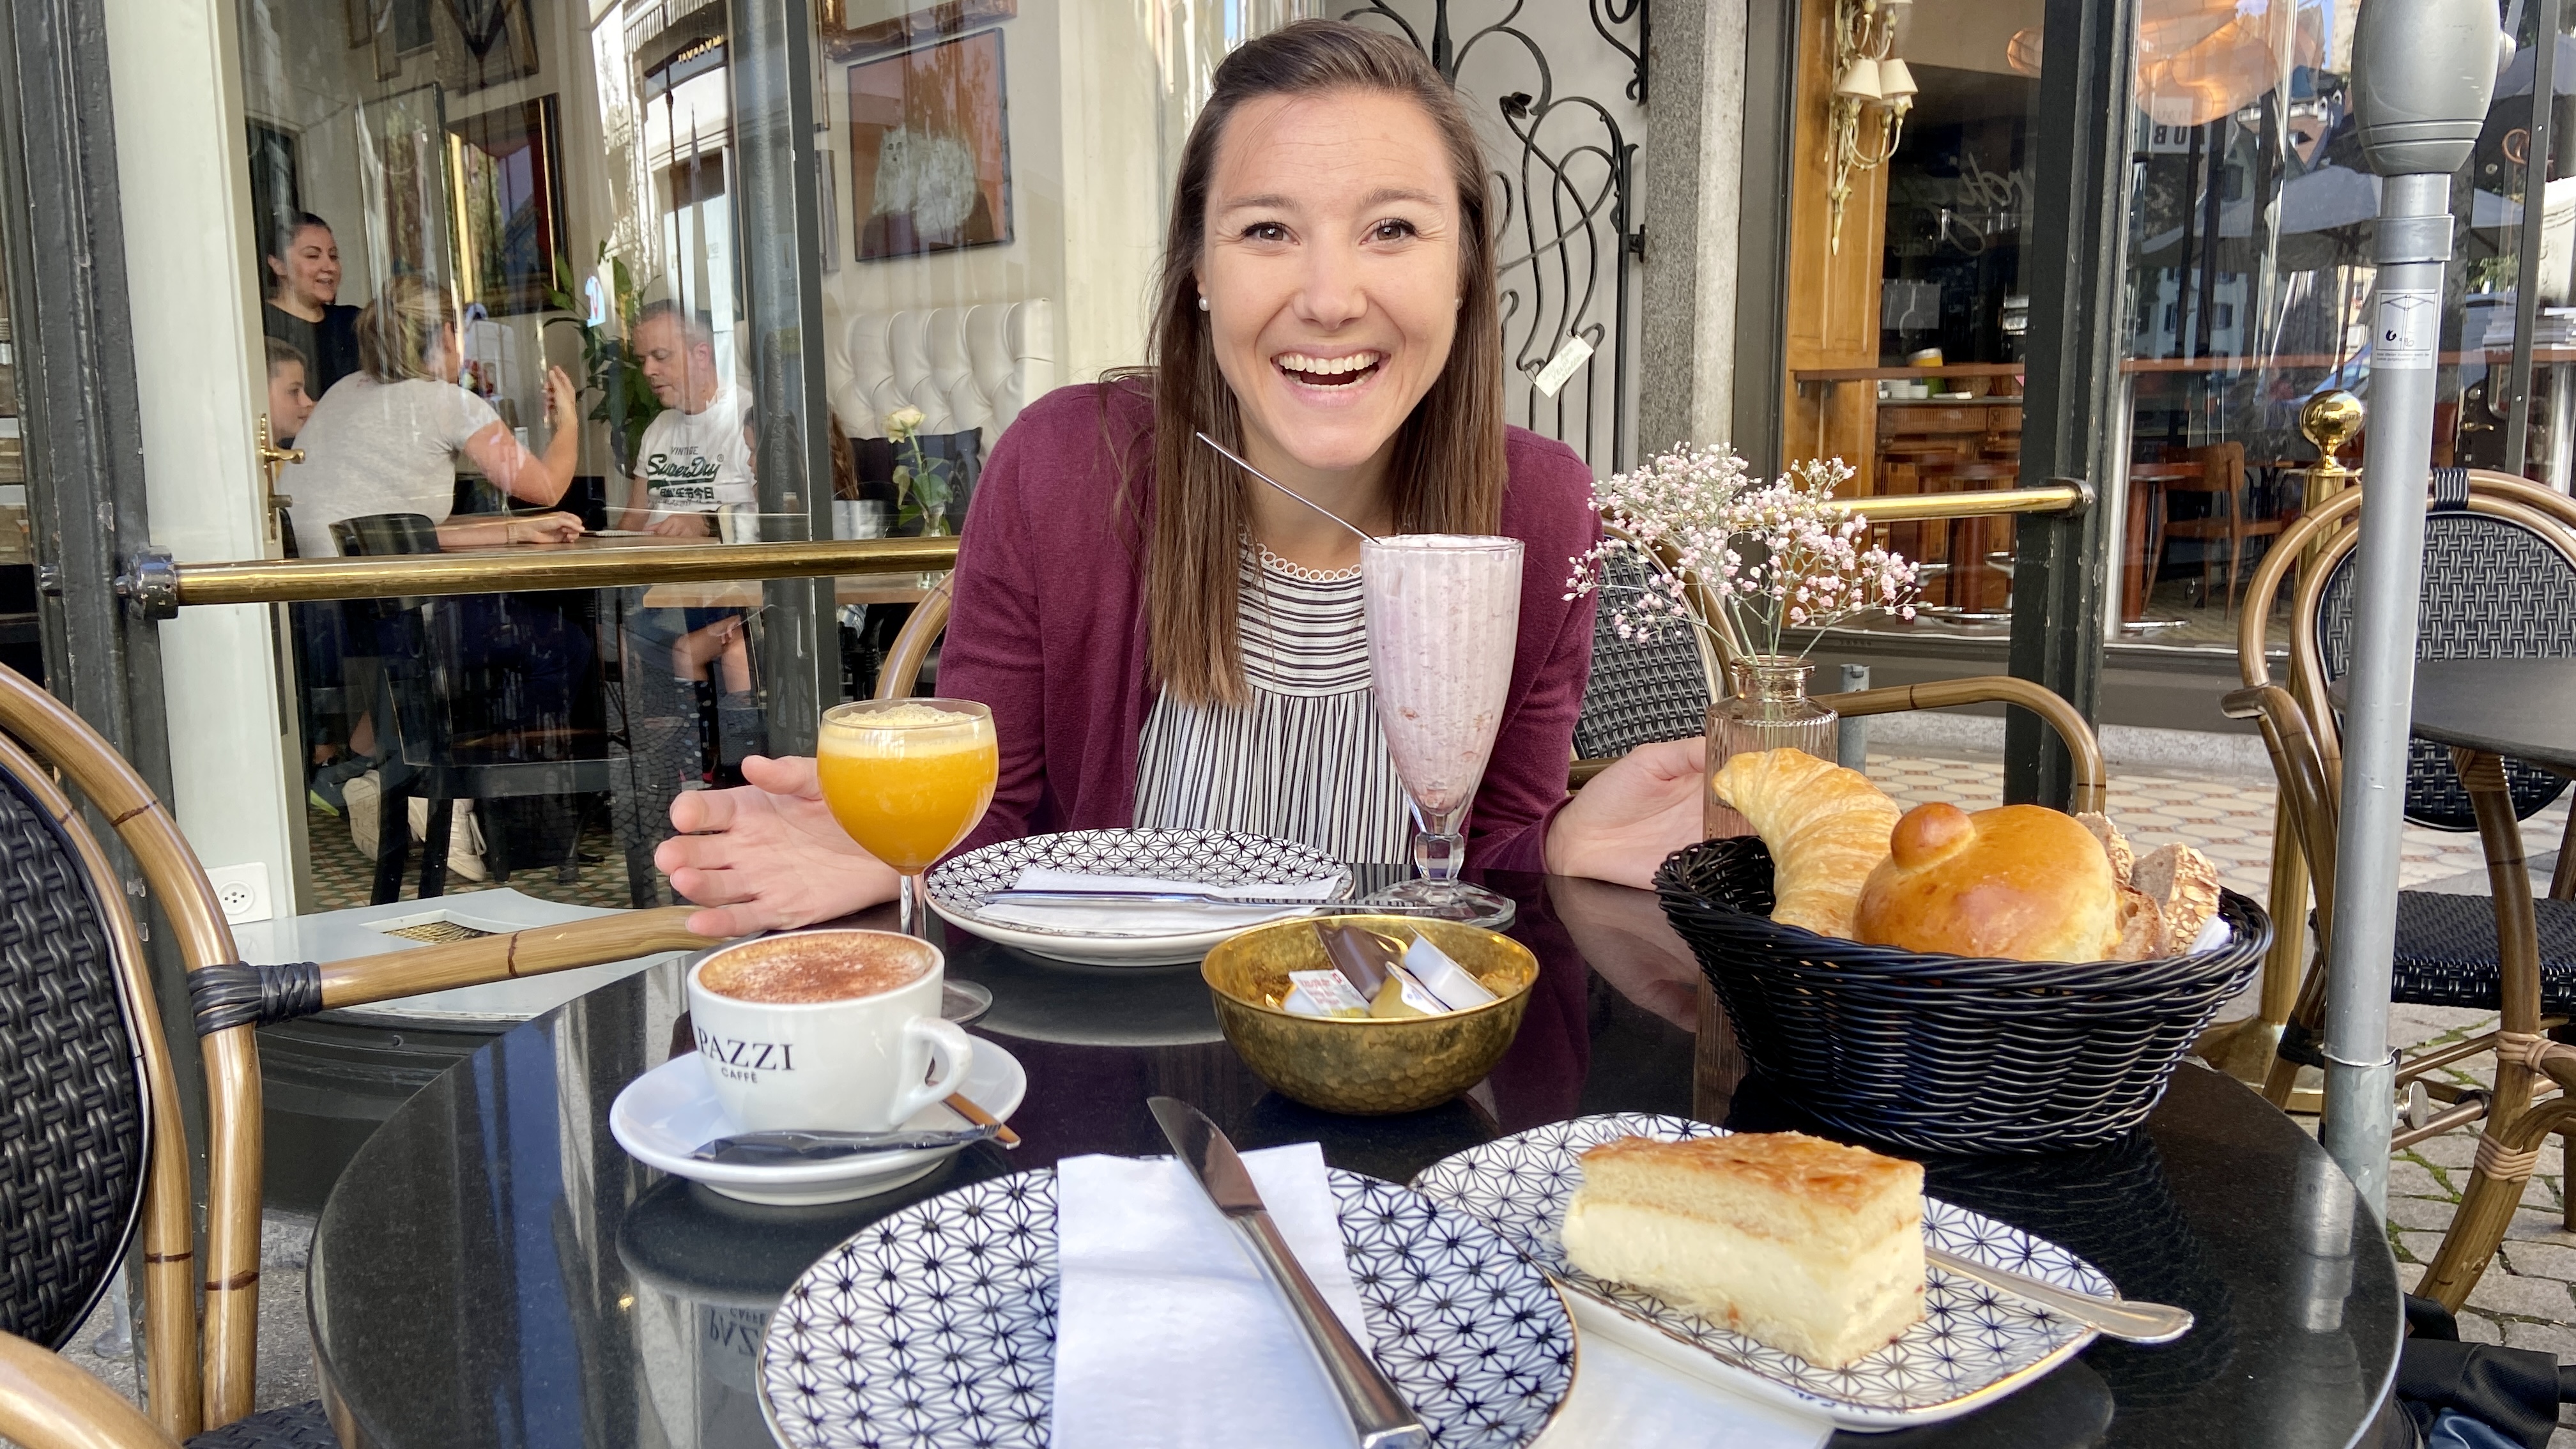 Jana eating breakfast at cafe marti gras lucerne